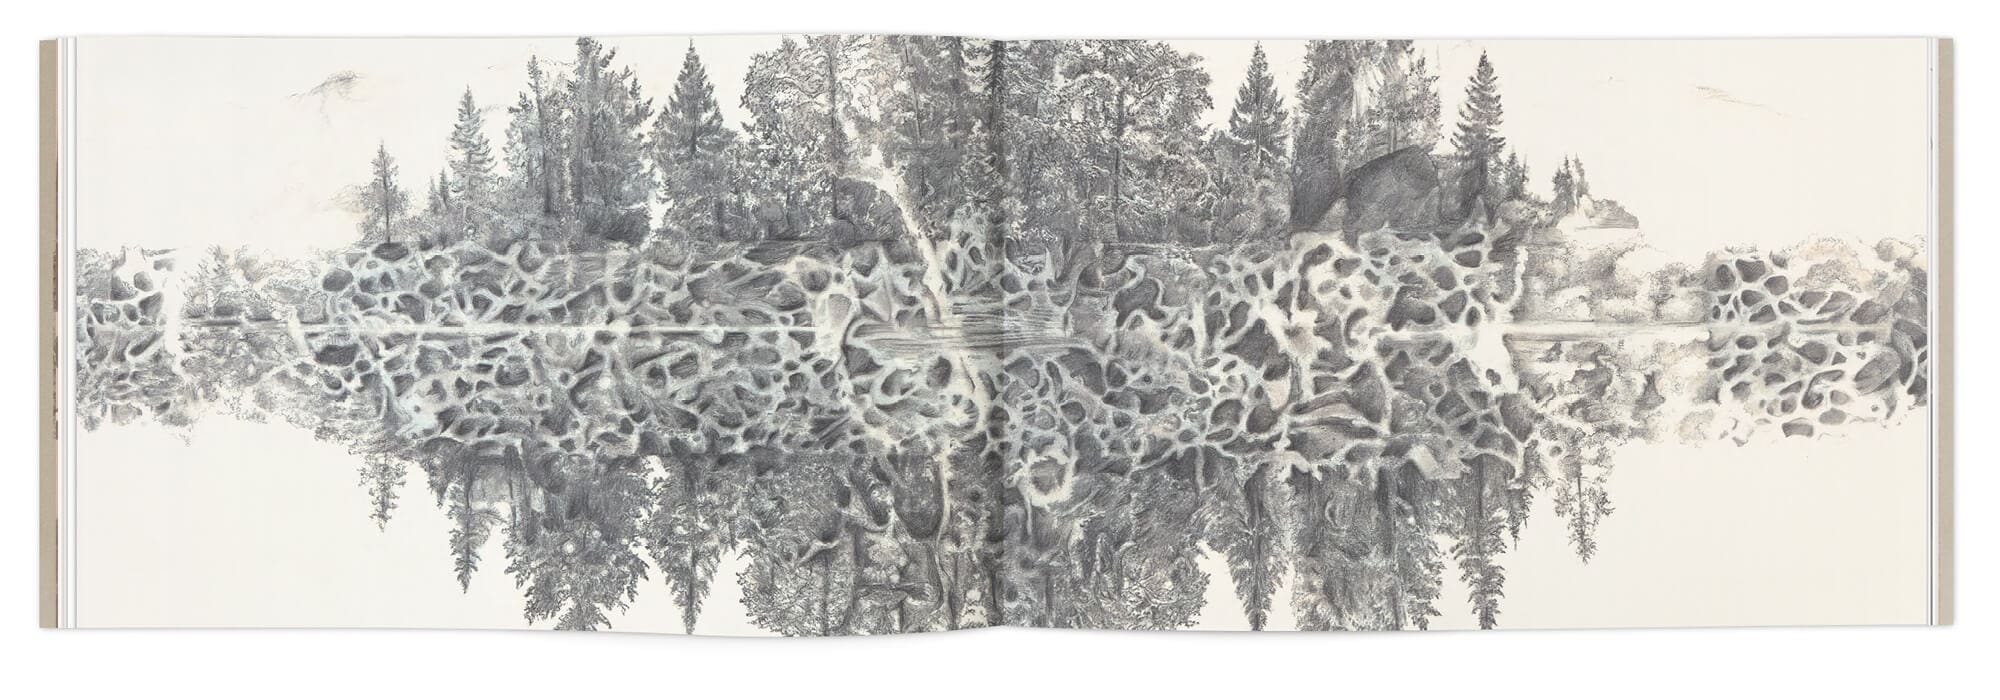 Les paysages enneigés d'Hélène Muheim, dessin au graphite, dans le livre Quelque part dans l'inachevé, Graphisme IchetKar